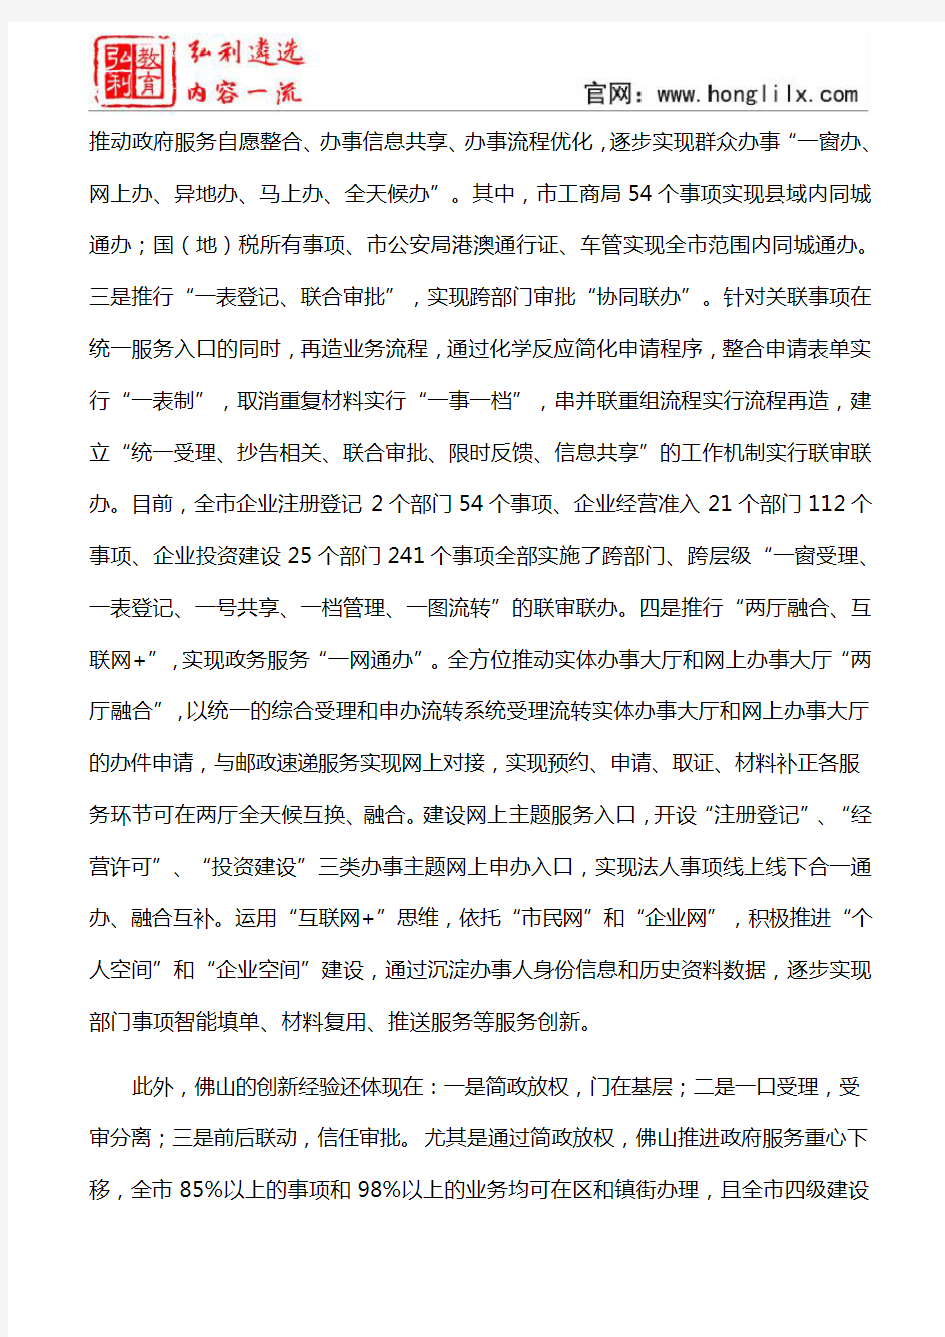 调研报告：关于佛山衢州杭州三市“互联网+政务服务”改革的调研报告